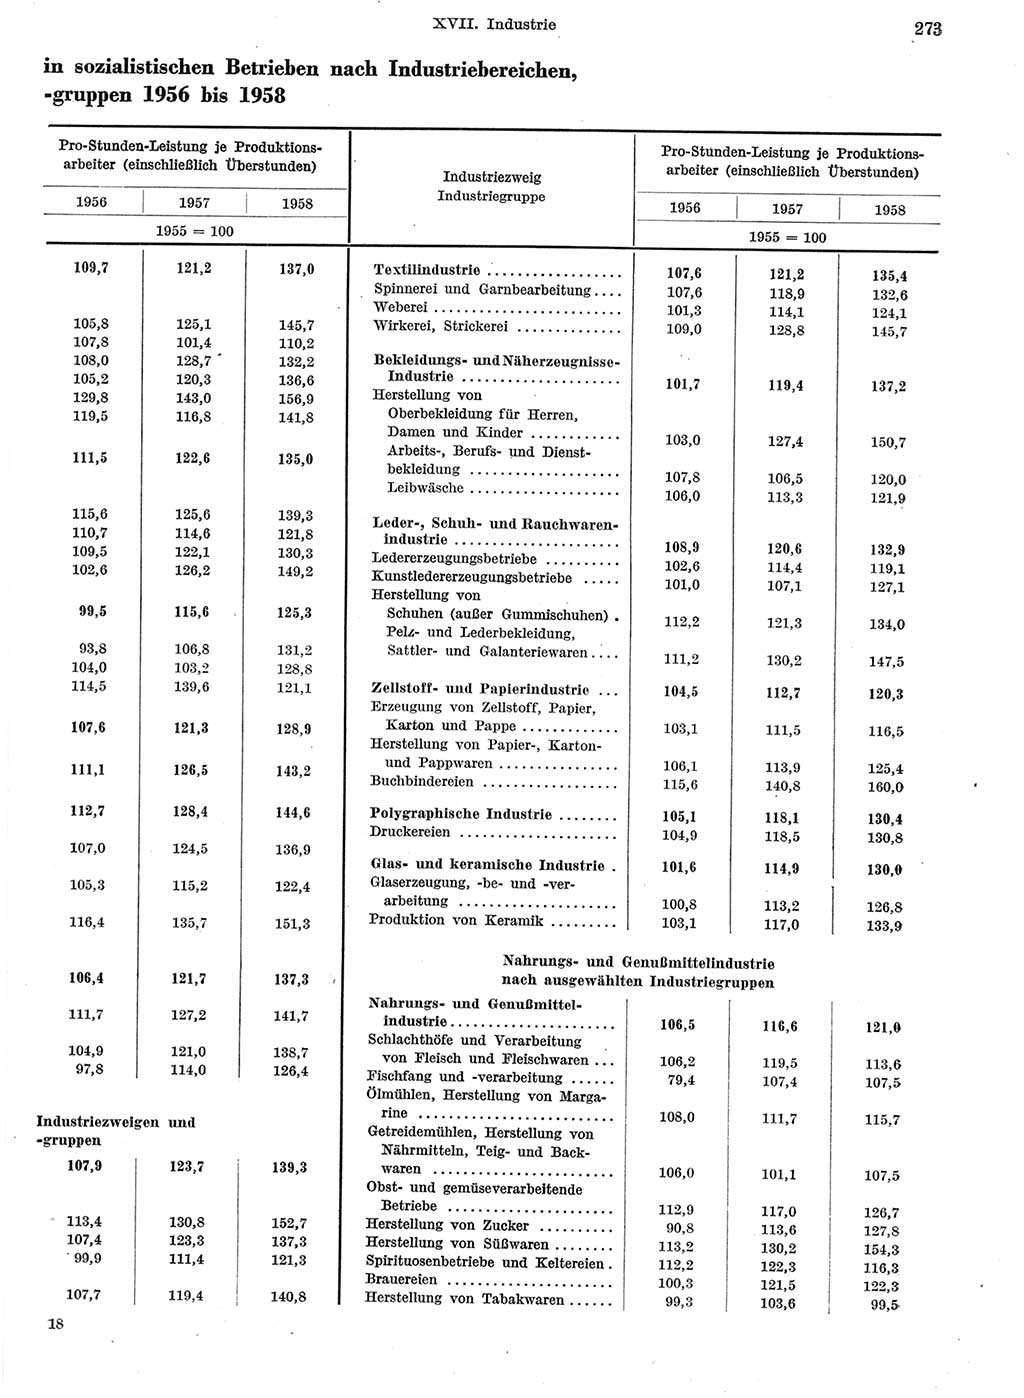 Statistisches Jahrbuch der Deutschen Demokratischen Republik (DDR) 1959, Seite 273 (Stat. Jb. DDR 1959, S. 273)